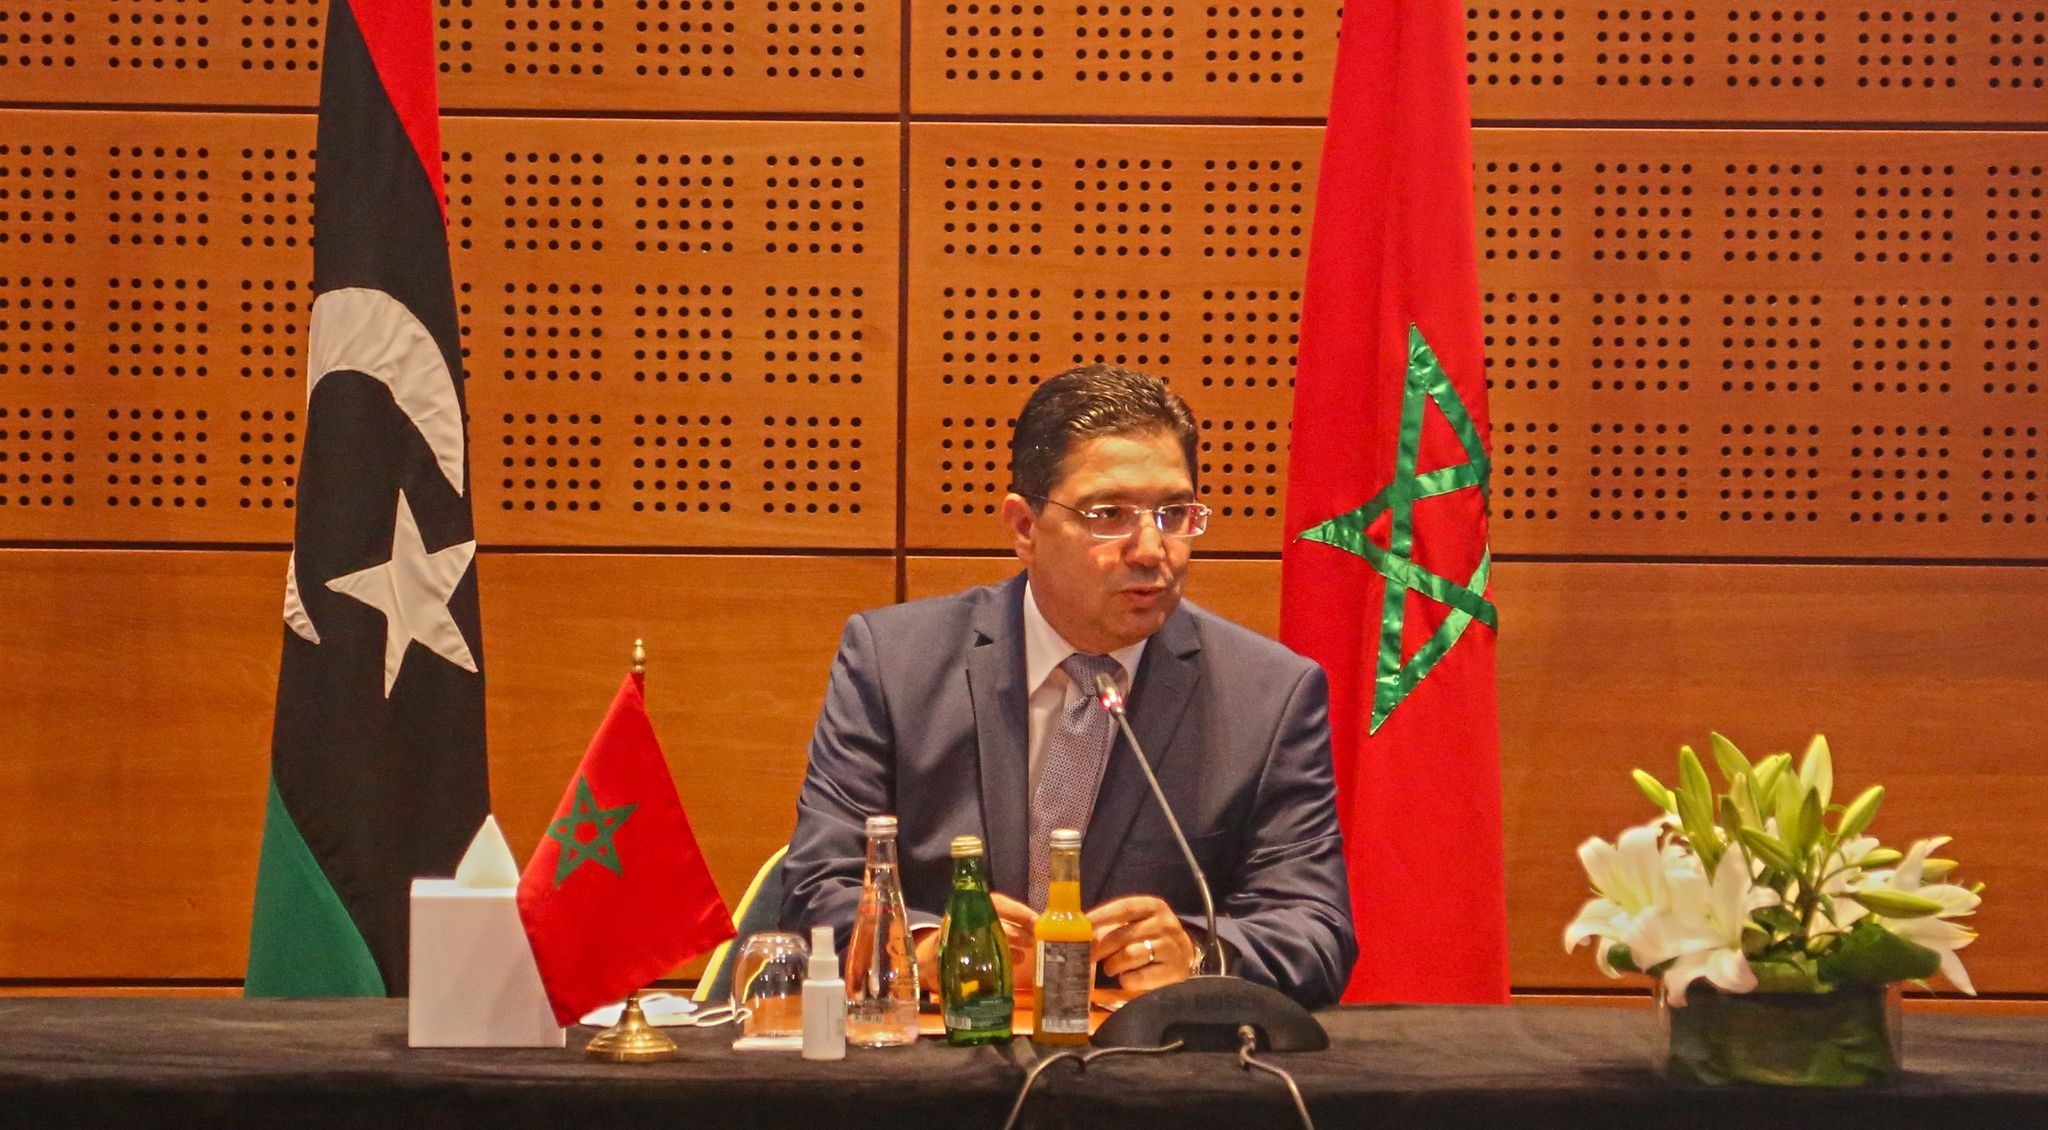 افتتاح القنصليات بالأقاليم الجنوبية يبرز الدعم الإفريقي لملف الصحراء المغربية